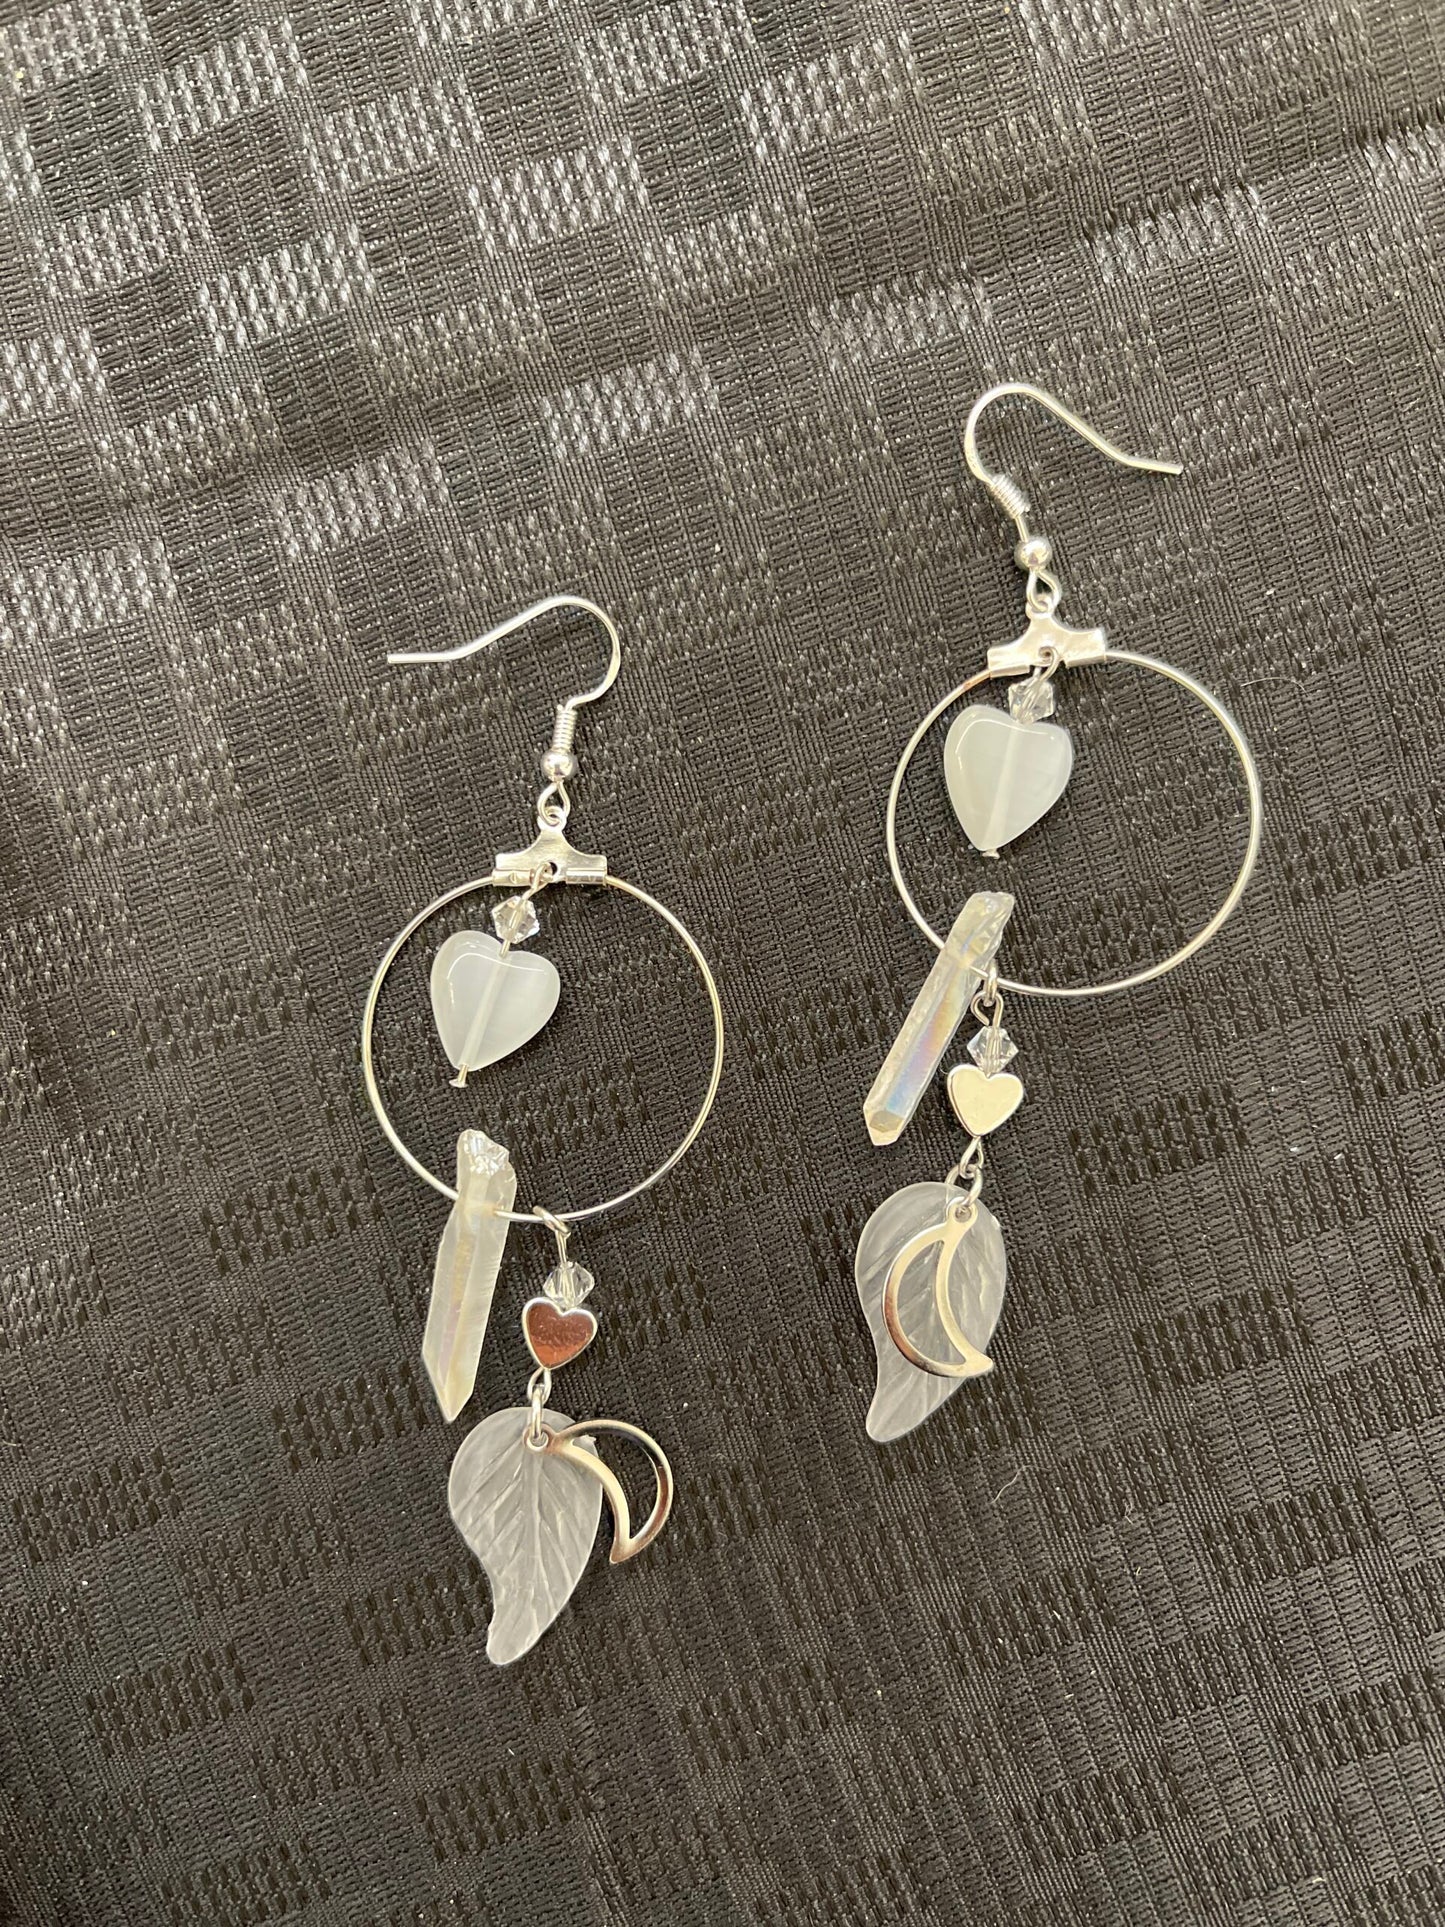 Crystal Dreamcatcher earrings